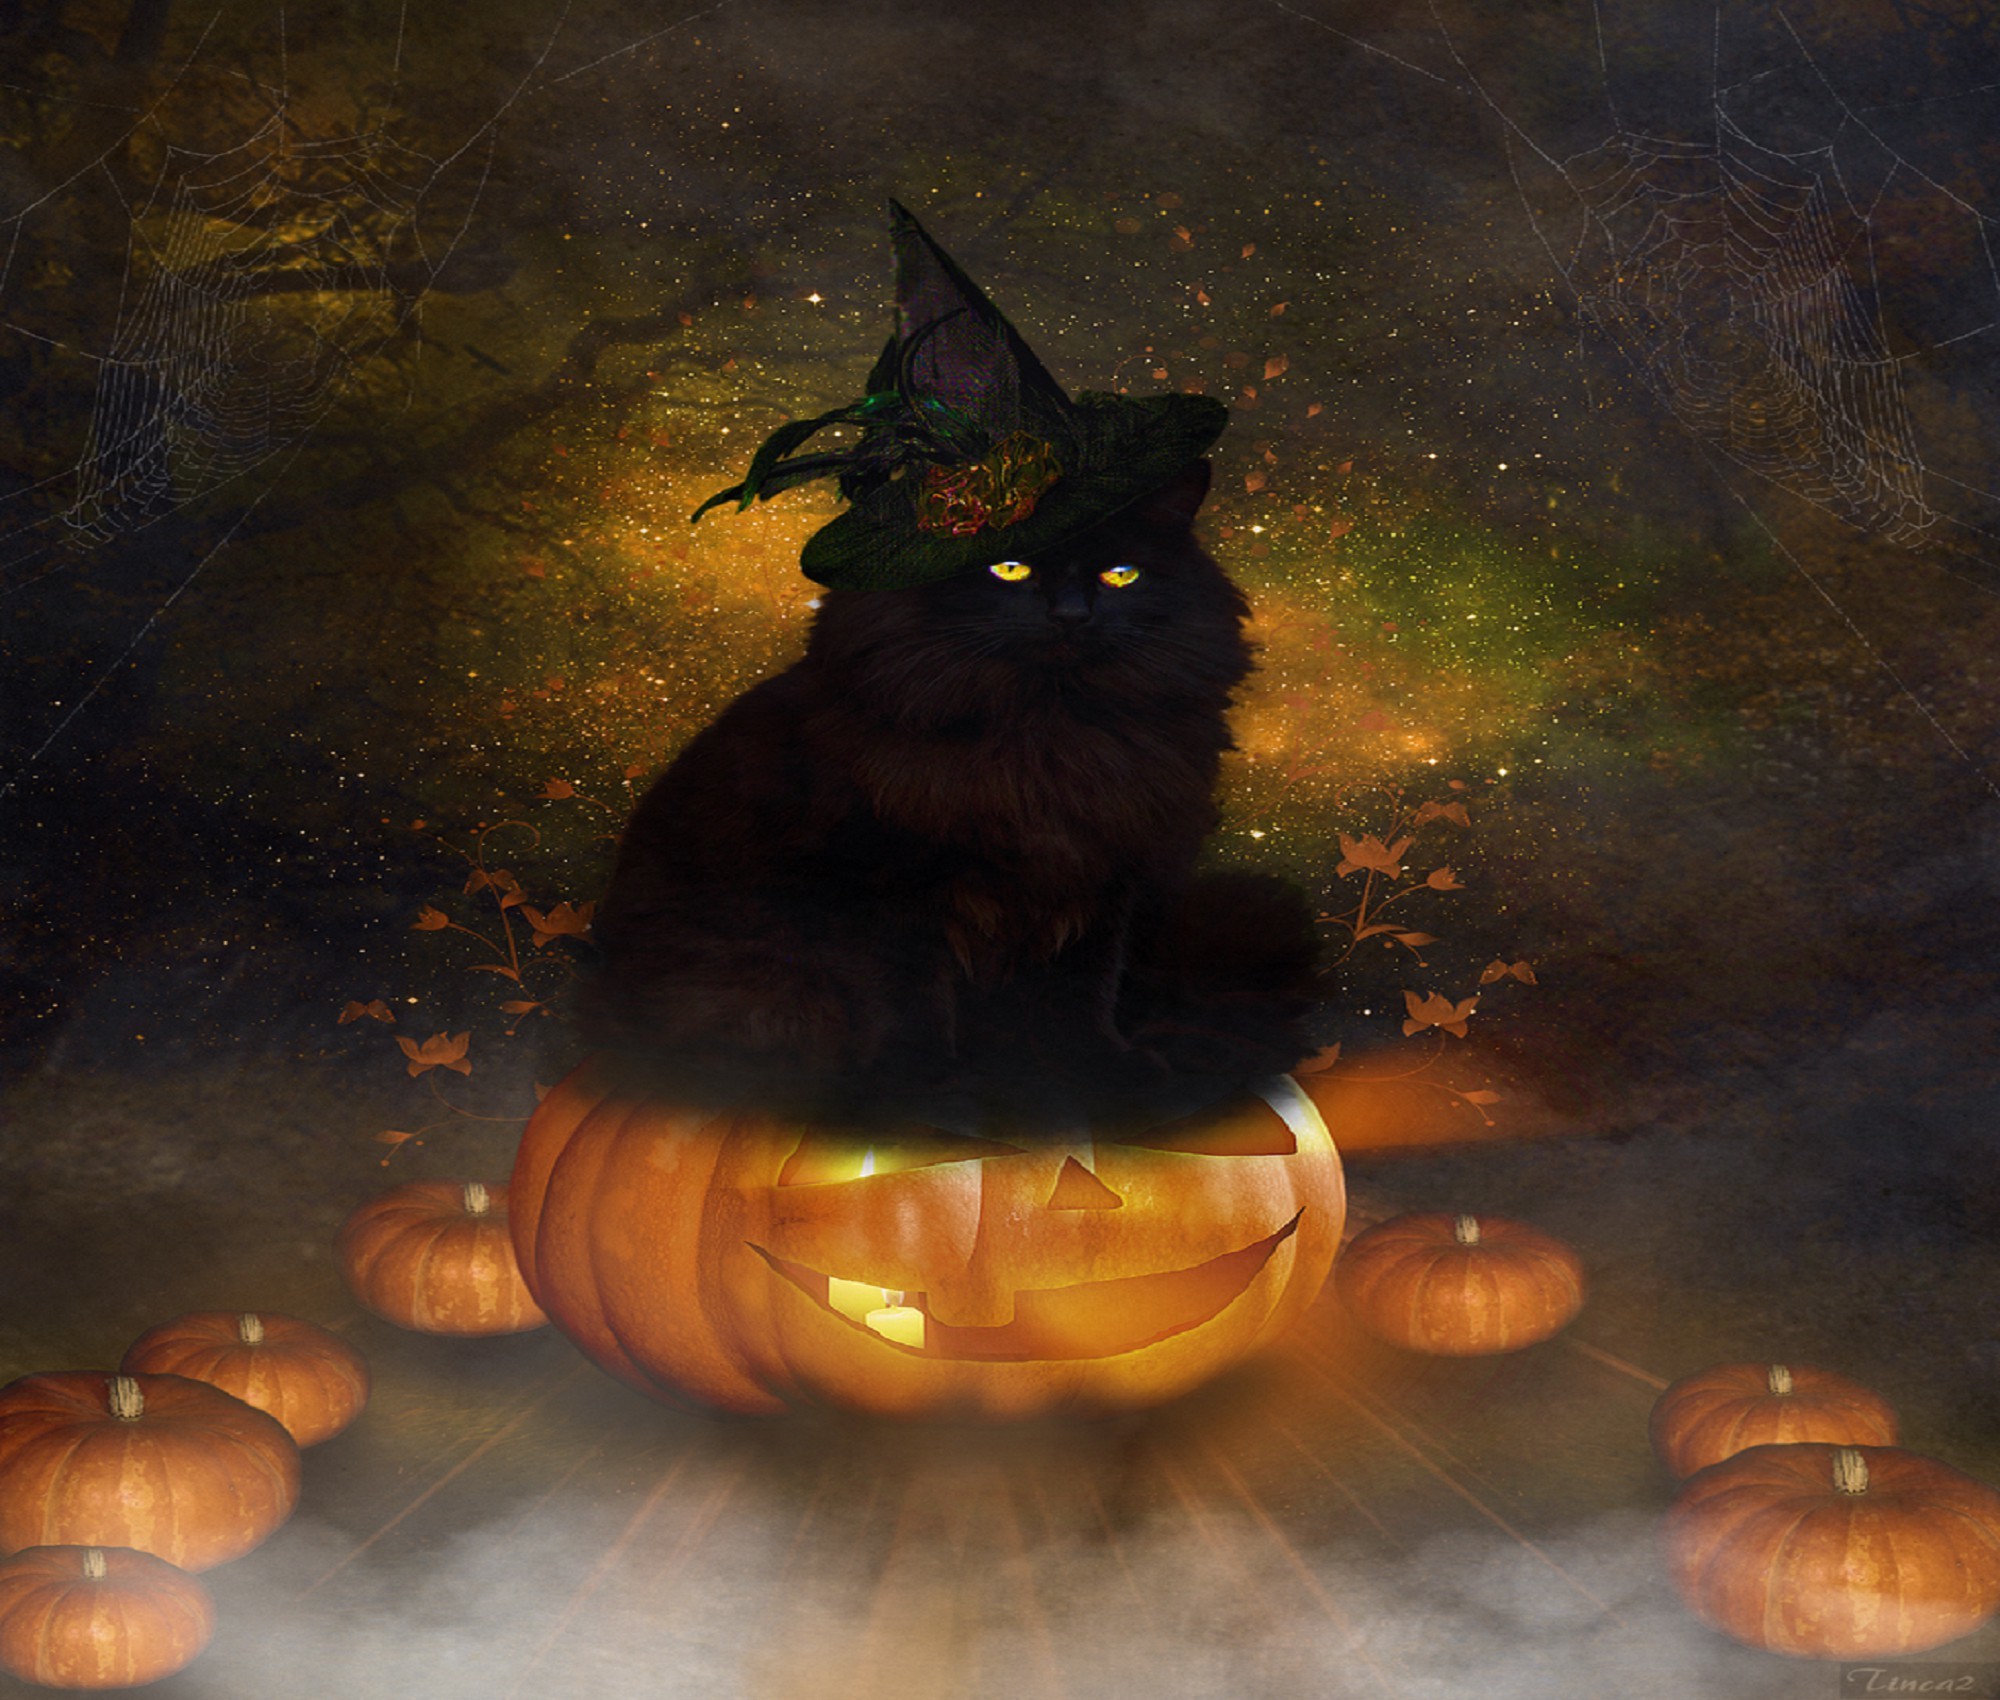 Black Cat Halloween Wallpaper (51+ images)